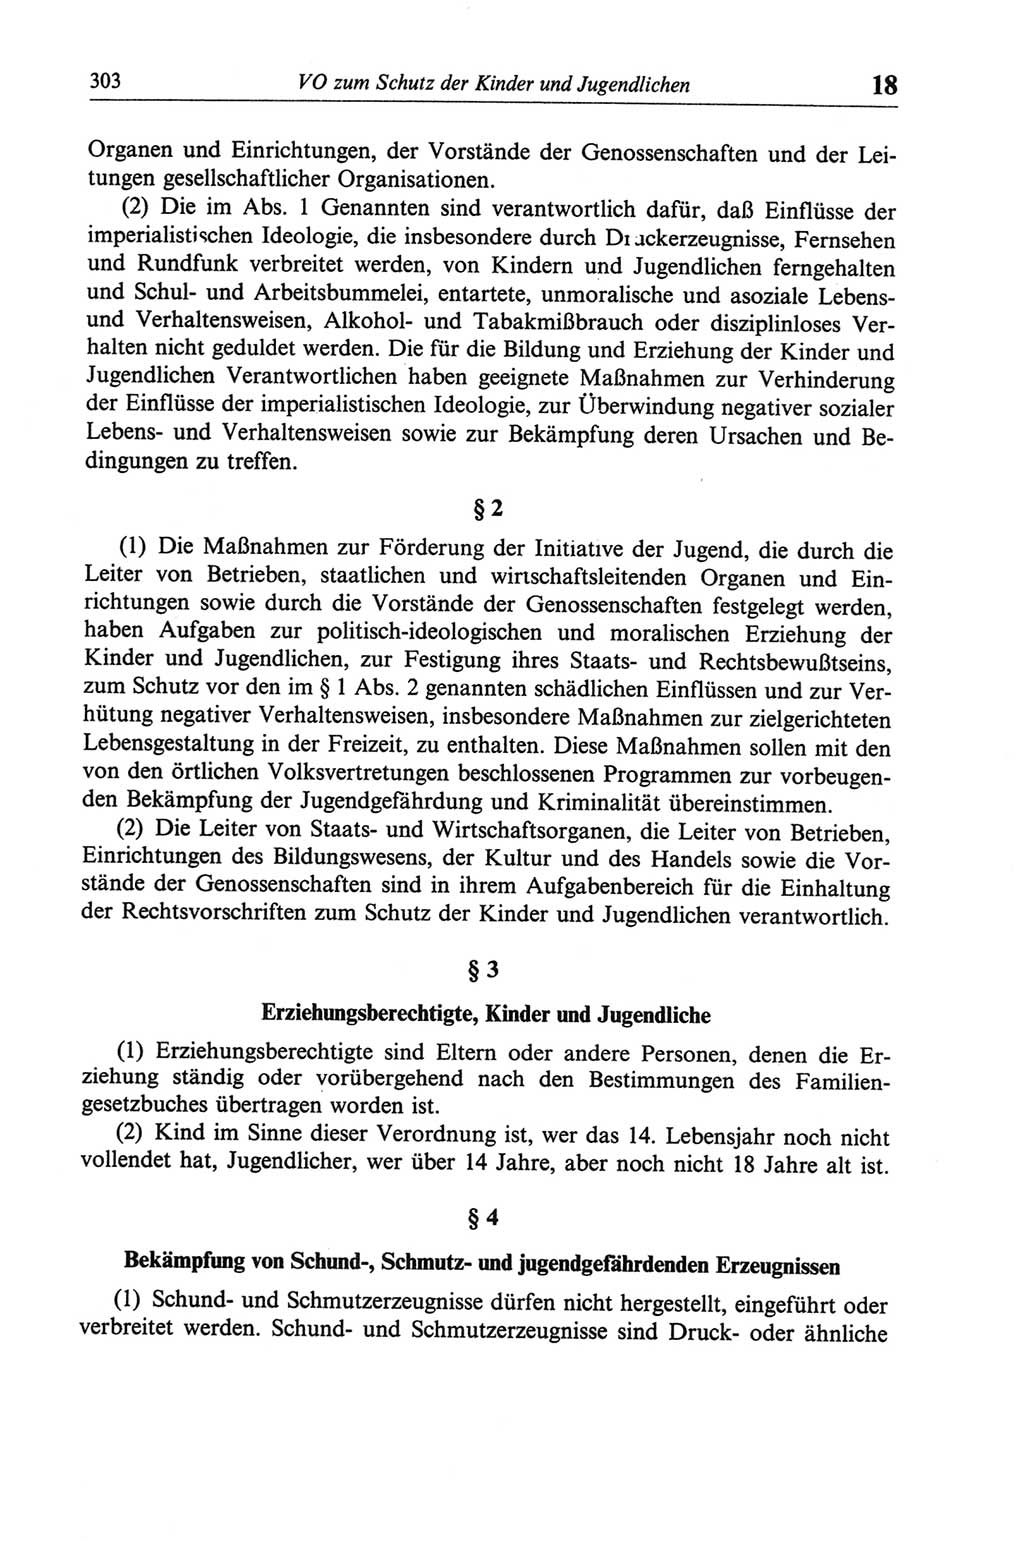 Strafgesetzbuch (StGB) der Deutschen Demokratischen Republik (DDR) und angrenzende Gesetze und Bestimmungen 1968, Seite 303 (StGB Ges. Best. DDR 1968, S. 303)